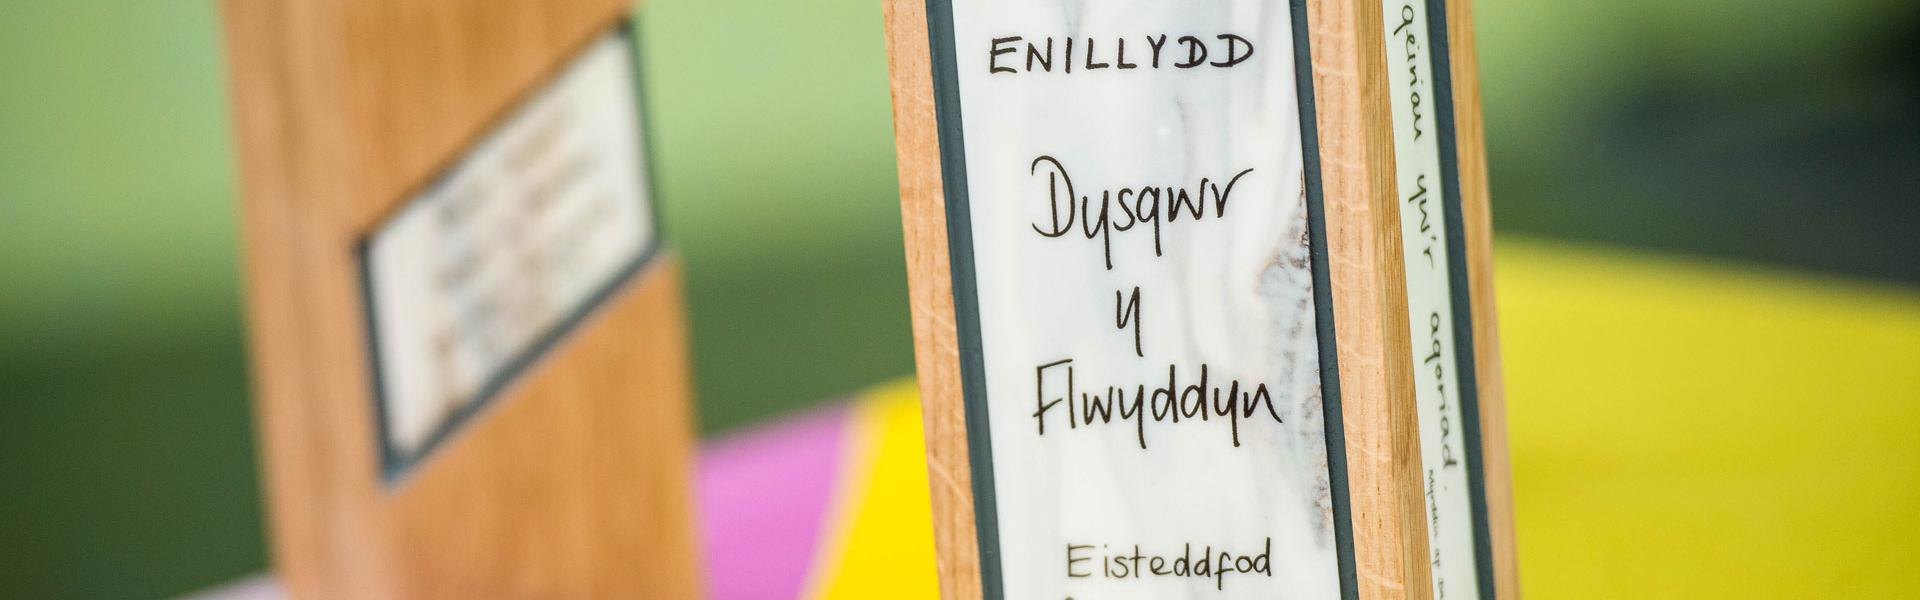 Enillydd Dysgwyr y Flwyddyn 2019